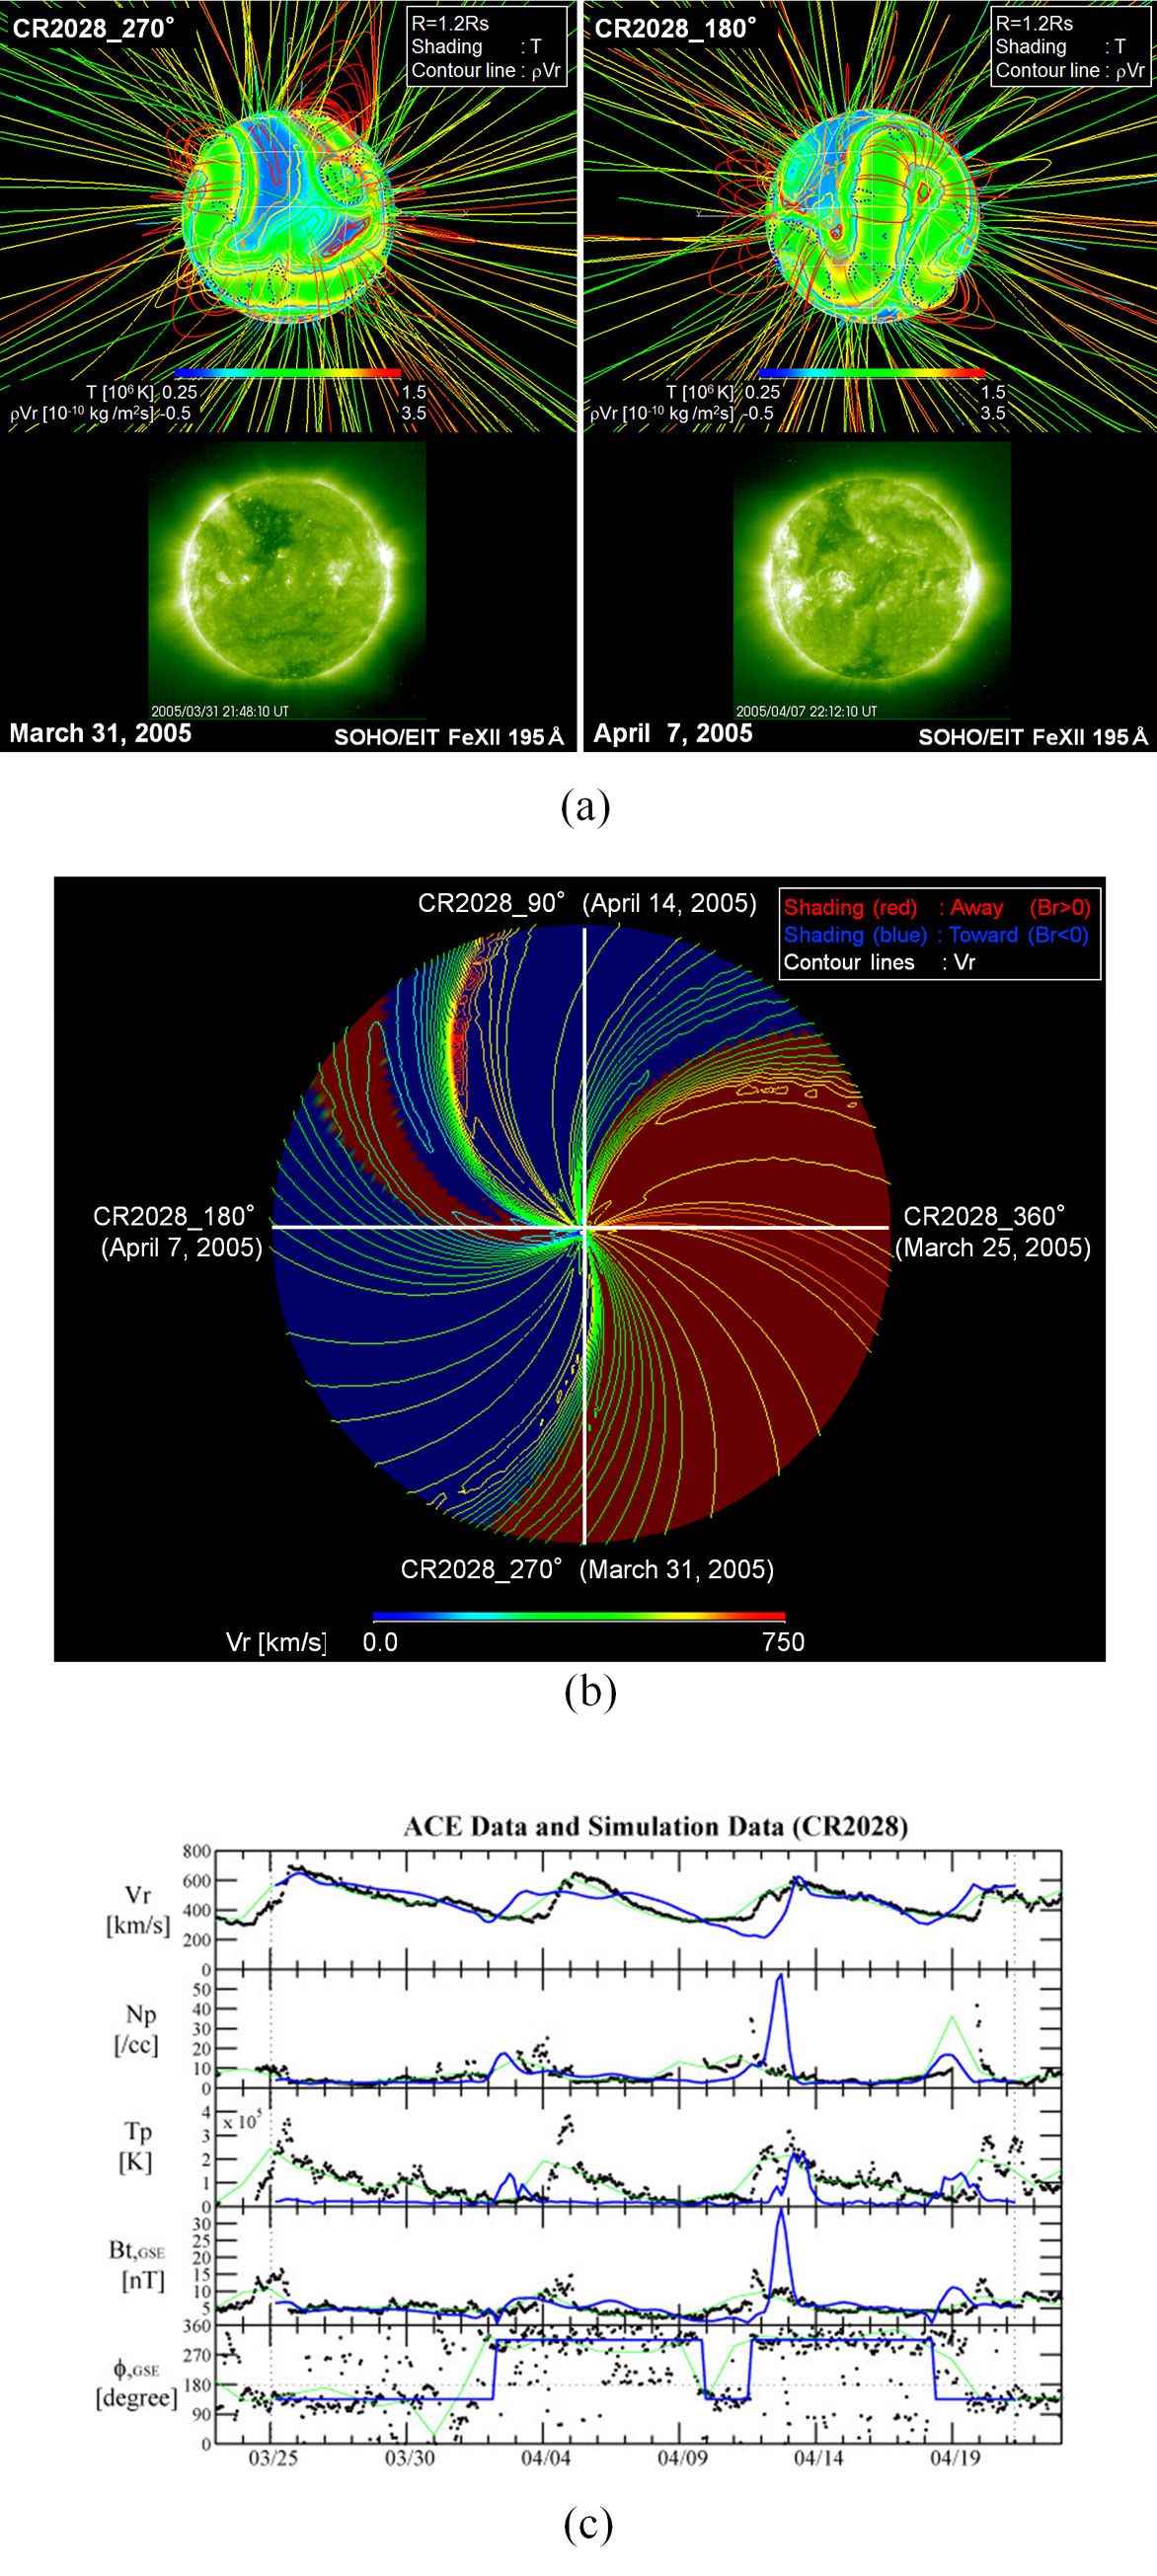 図2.
            太陽-太陽風MHDシミュレーションによる計算例（キャリントン周期2028、2005年3月25日~4月21日期間）。(a) キャリントン経度270度と180度から見た太陽近景（それぞれ2005年3月31日および4月7日に地球から見た太陽に対応）。カラーとコンターラインは1.2 Rs（Rs：太陽半径）での温度と質量流速動径成分、磁力線のカラーはコロナ温度。下部は対応する日時にSOHO衛生EITにて撮像された画像。(b) 太陽圏赤道面での太陽風構造。中心は対応、外縁は半径200Rsの円。白線はキャリントン経度360度、270度、180度、90度（それぞれ2005年3月25日、3月31日、4月7日、4月14日に地球に面する経度。）コンターラ院は太陽風速度地球方向成分、カラーは磁場極性。(c) L1軌道におけるシミュレーションデータとACE衛星による実測データの比較。縦破線はキャリントン周期の開始と終了。上段から、太陽風速度地球方向成分、プラズマ密度、プラズマ温度、磁場強度、セクター極性の指標。黒点線はACE衛星データの1時間平均値、緑実線はACE衛星データ1日平均値、青実線はシミュレーションデータ。